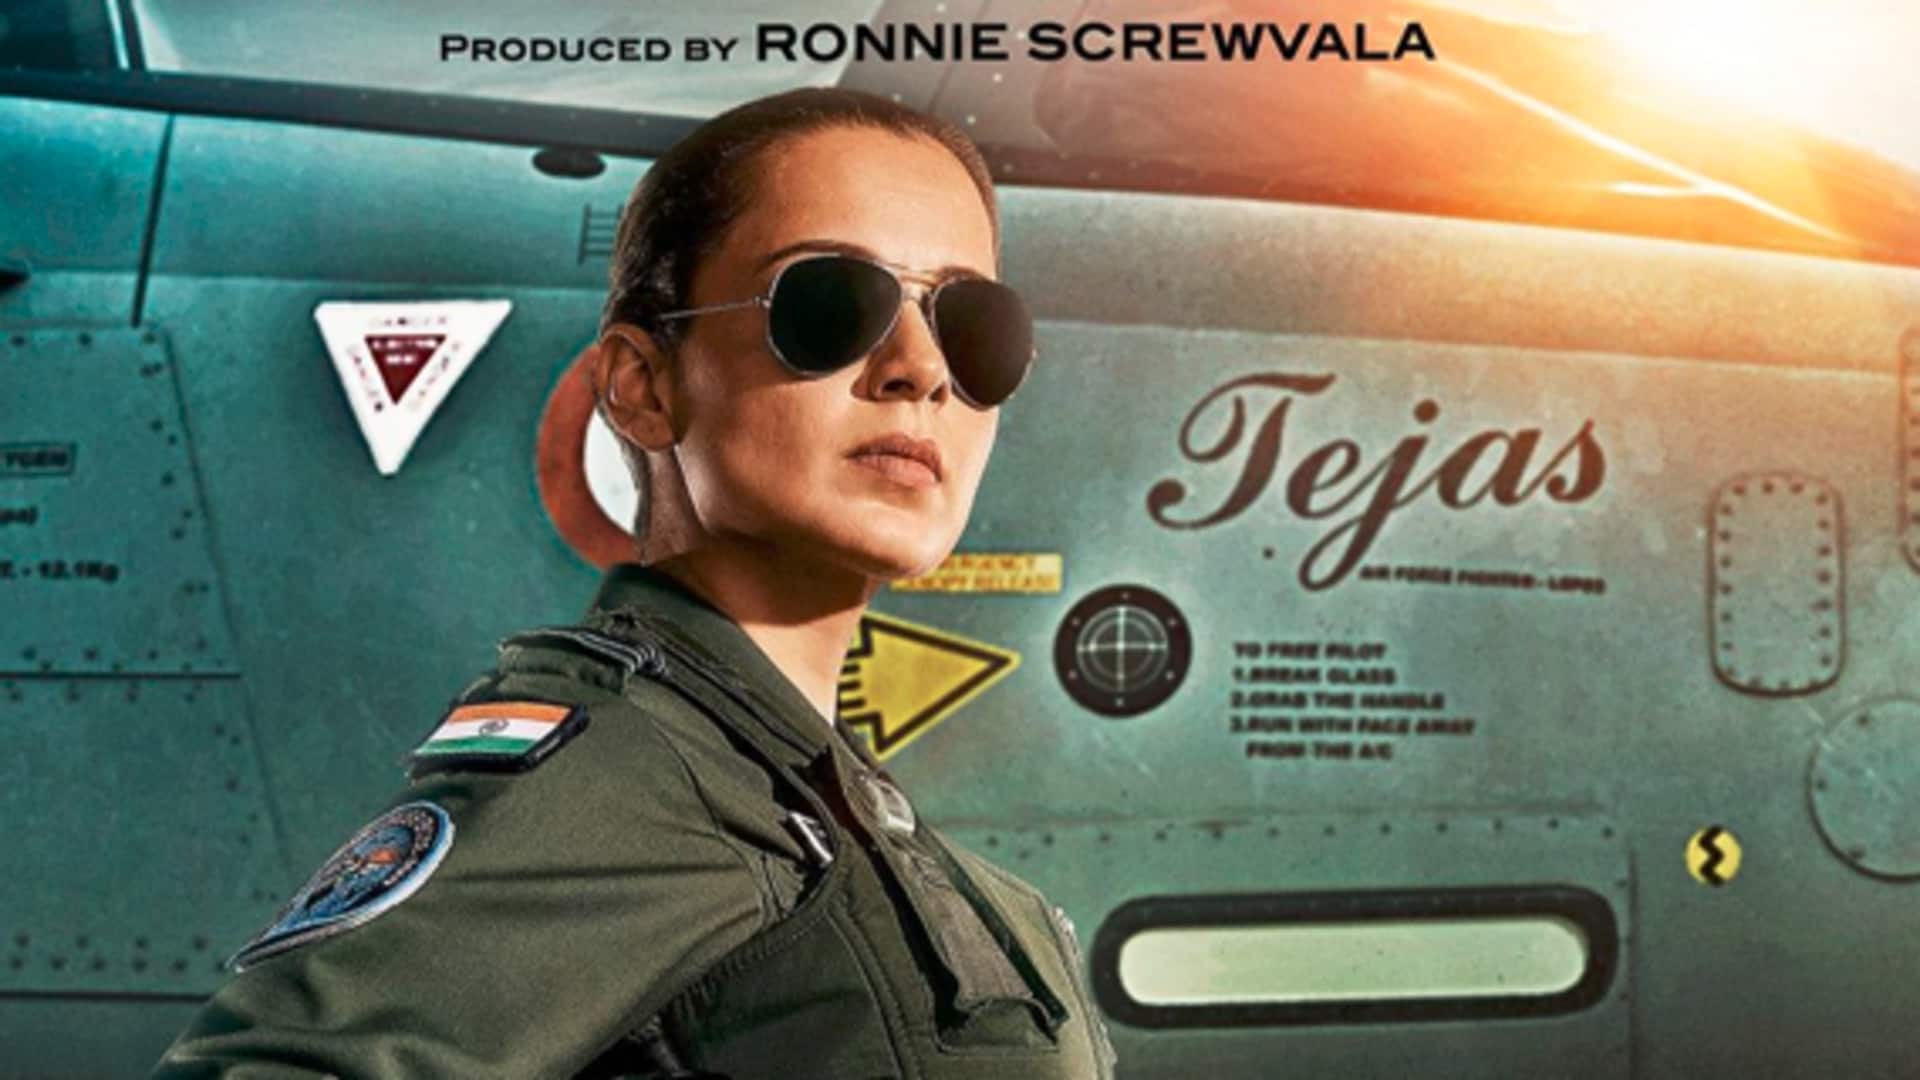 'तेजस' देख वायु सेना के अधिकारियों ने कहा- हर भारतवासी को देखनी चाहिए फिल्म, वीडियो वायरल 